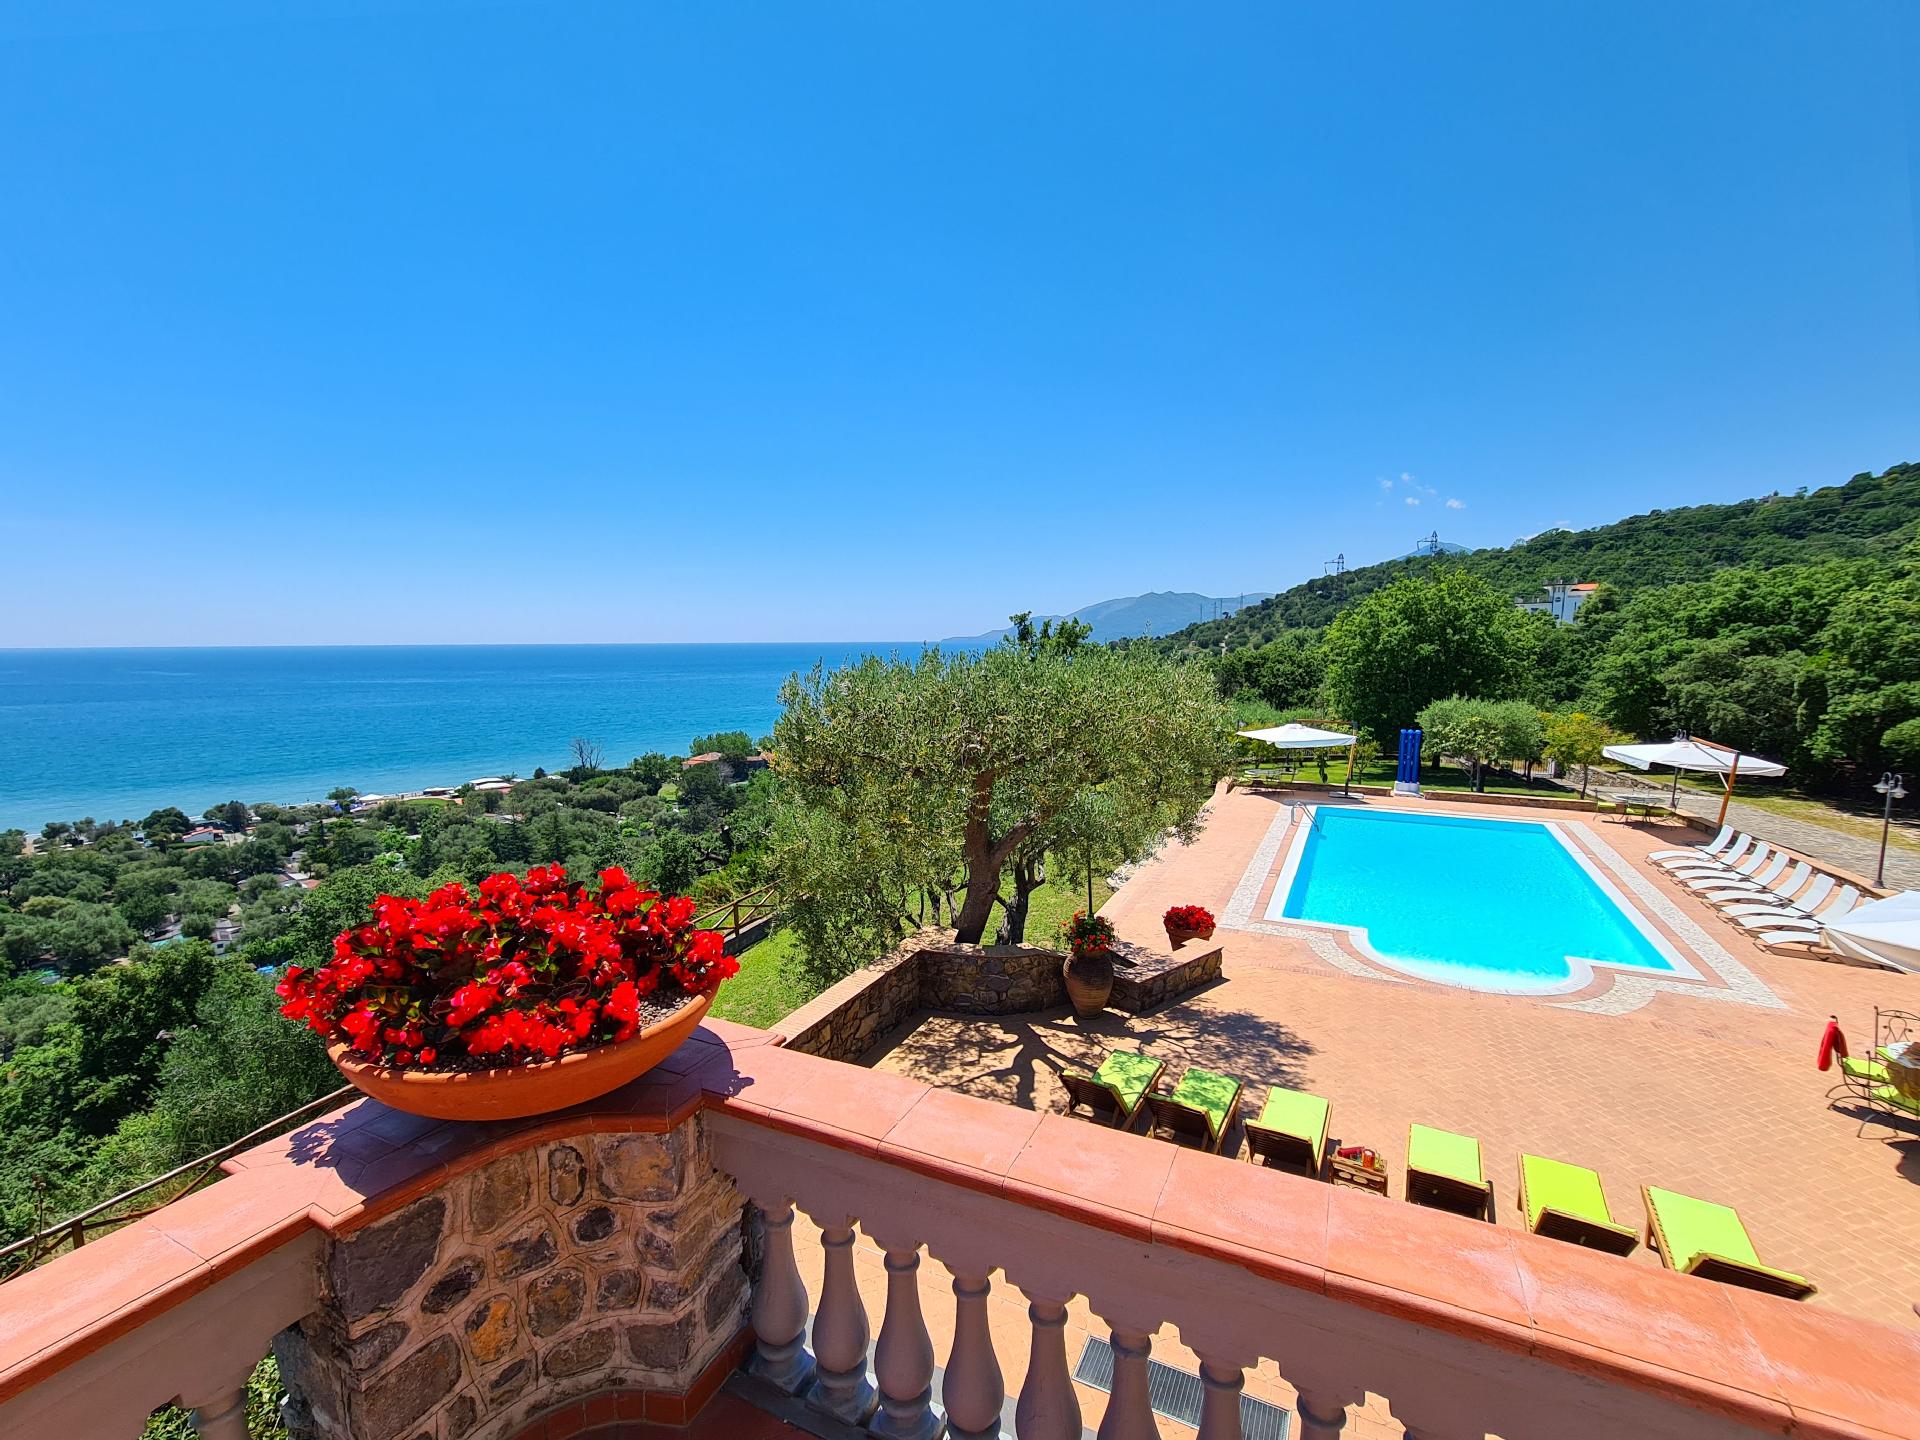 Villa mit Pool, Garten und Terrassen, von denen Si Ferienhaus in Italien